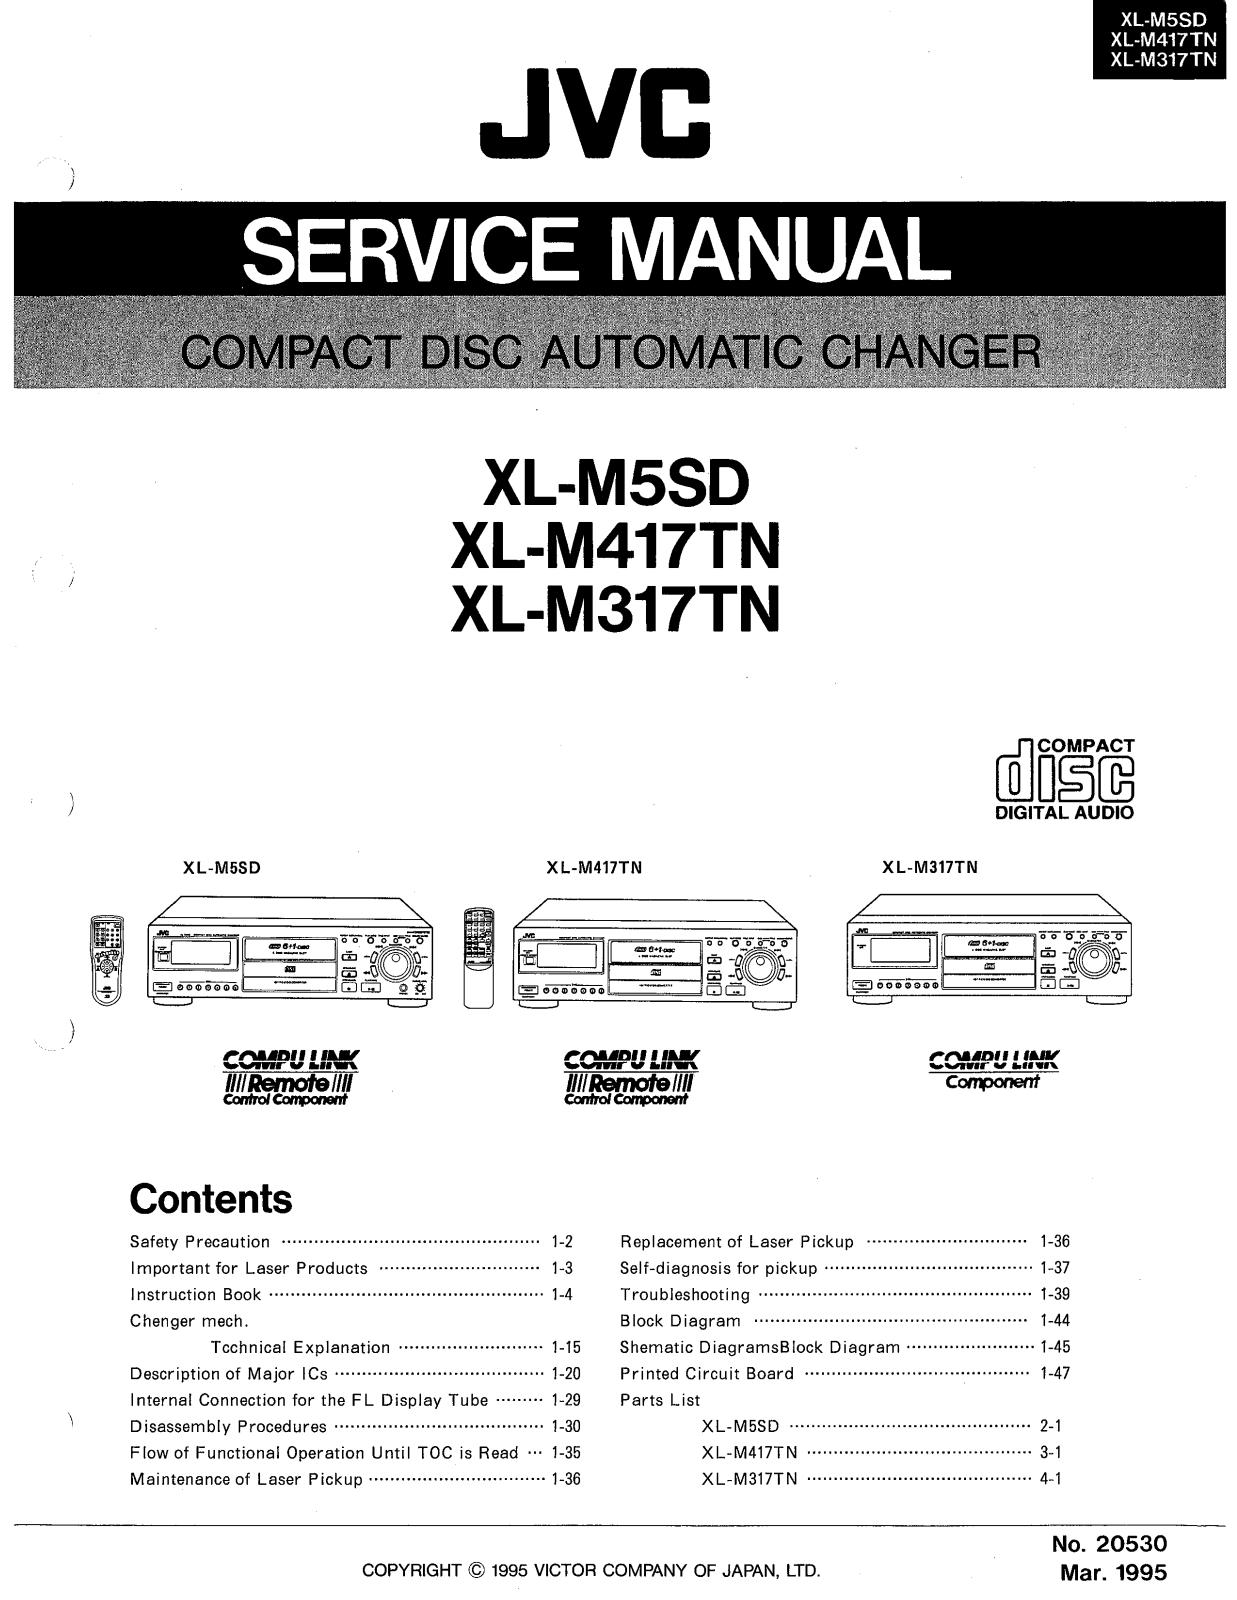 JVC XL-M317TN, XL-M417TN, XL-M5SD Service Manual